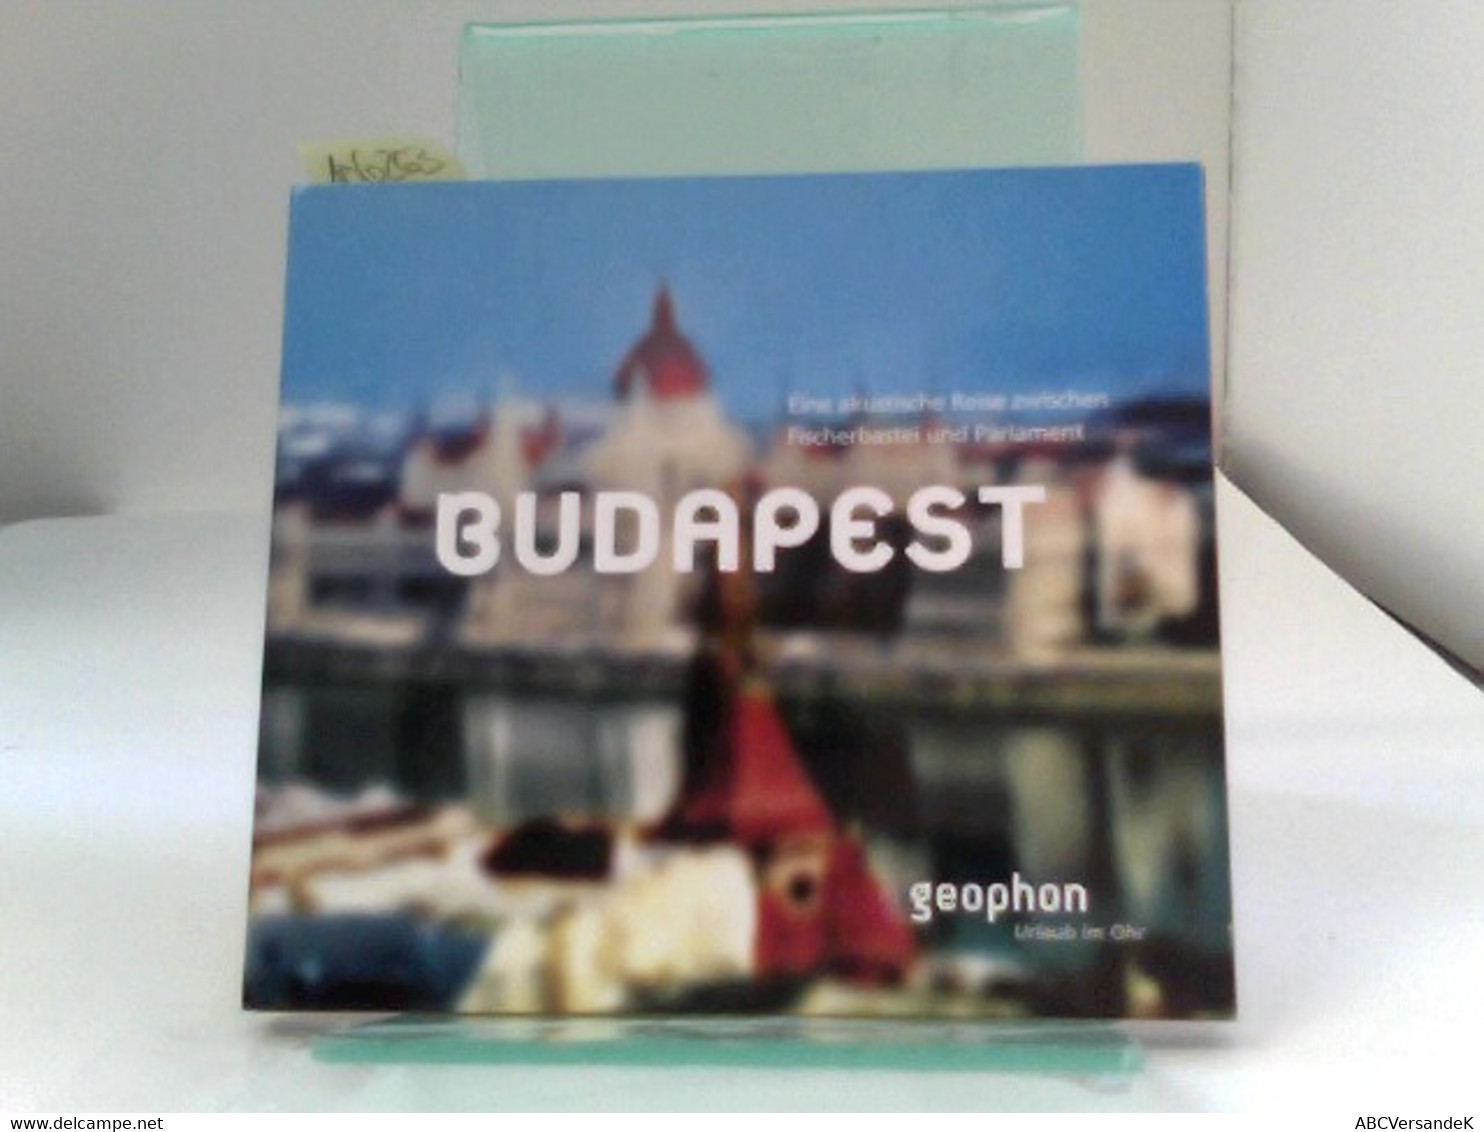 Budapest. Eine Akustische Reise Zwischen Fischerbastei Und Parlament. Reisefeature Mit Musik Und O-Tönen. 1 CD - CDs